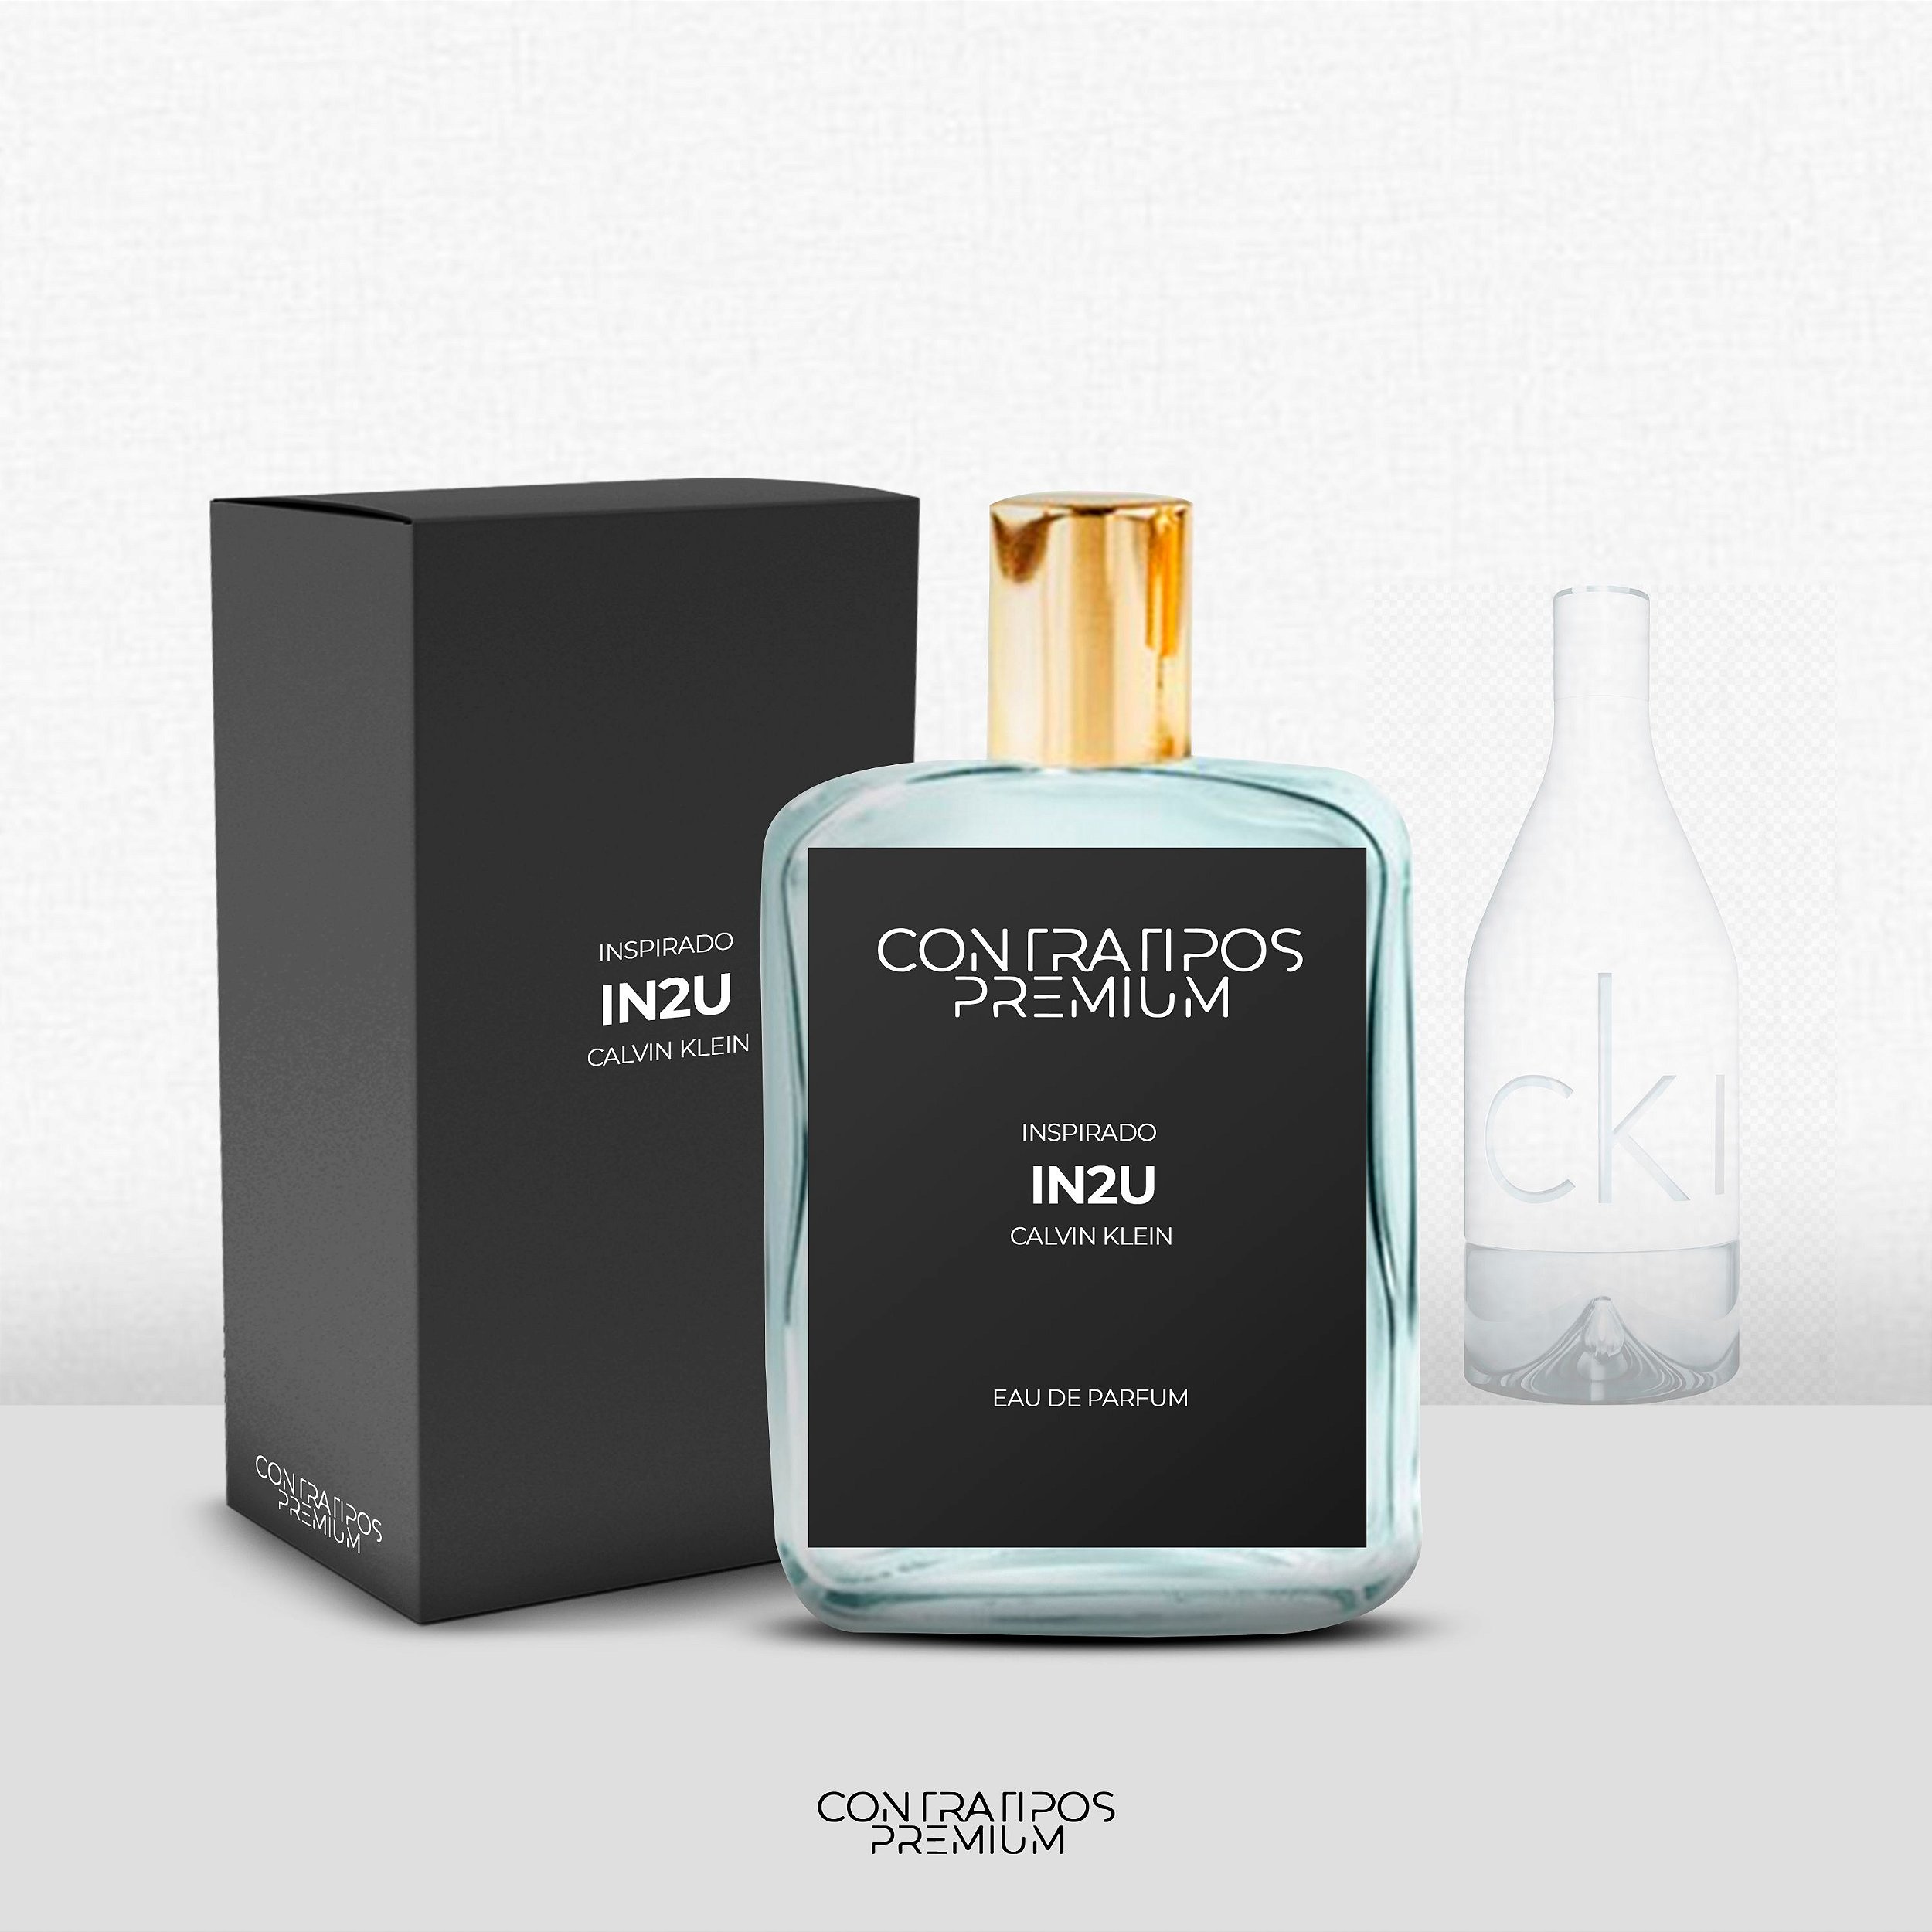 PERFUME CONTRATIPO - INSPIRADO CK IN2U MASCULINO - Loja ContratiposPremium  - Contratipos de perfumes originais - Perfumaria e Essências